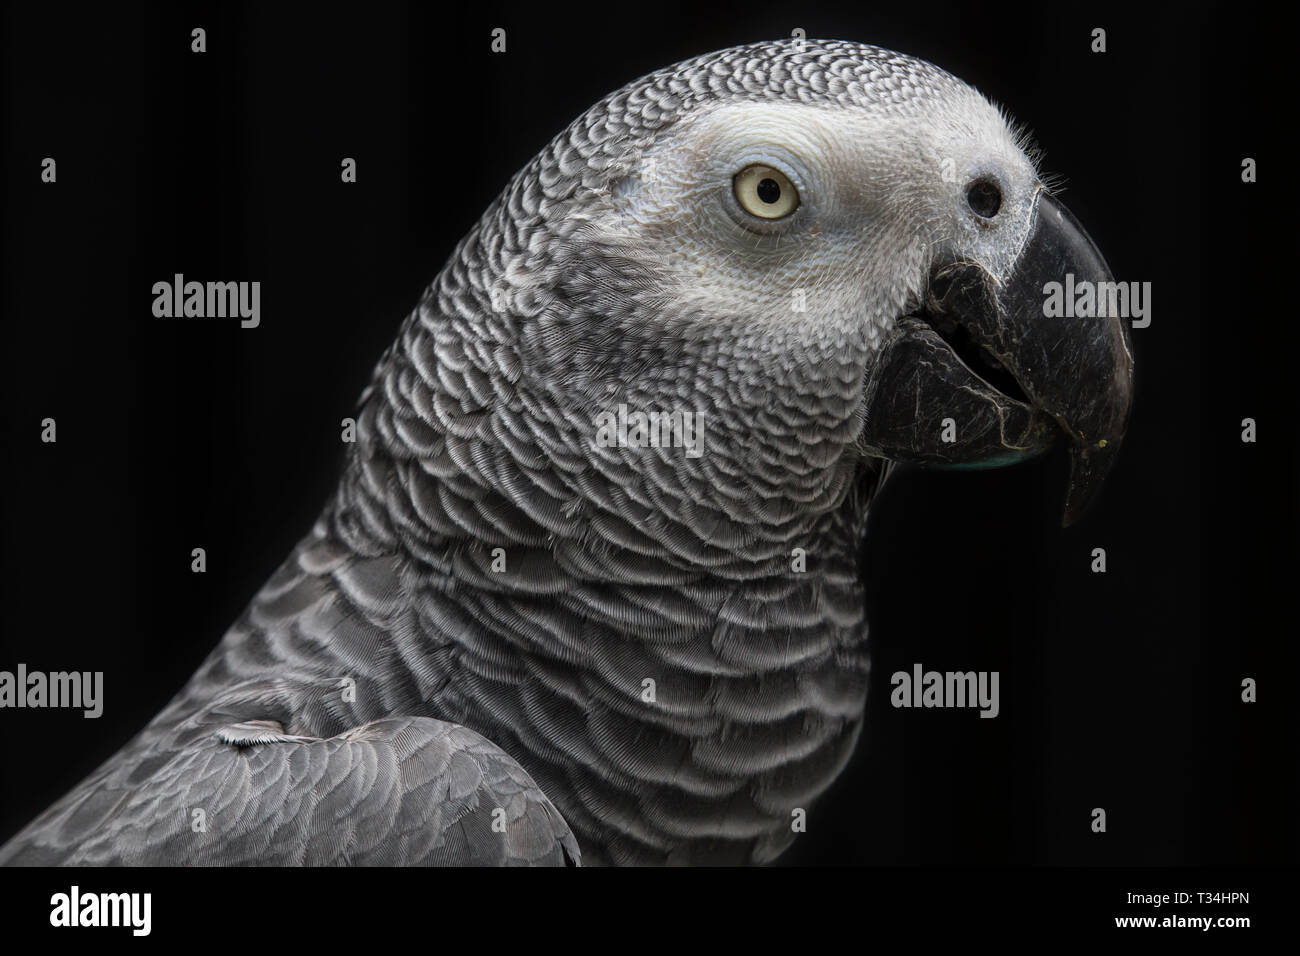 Portrait of a parrot Stock Photo